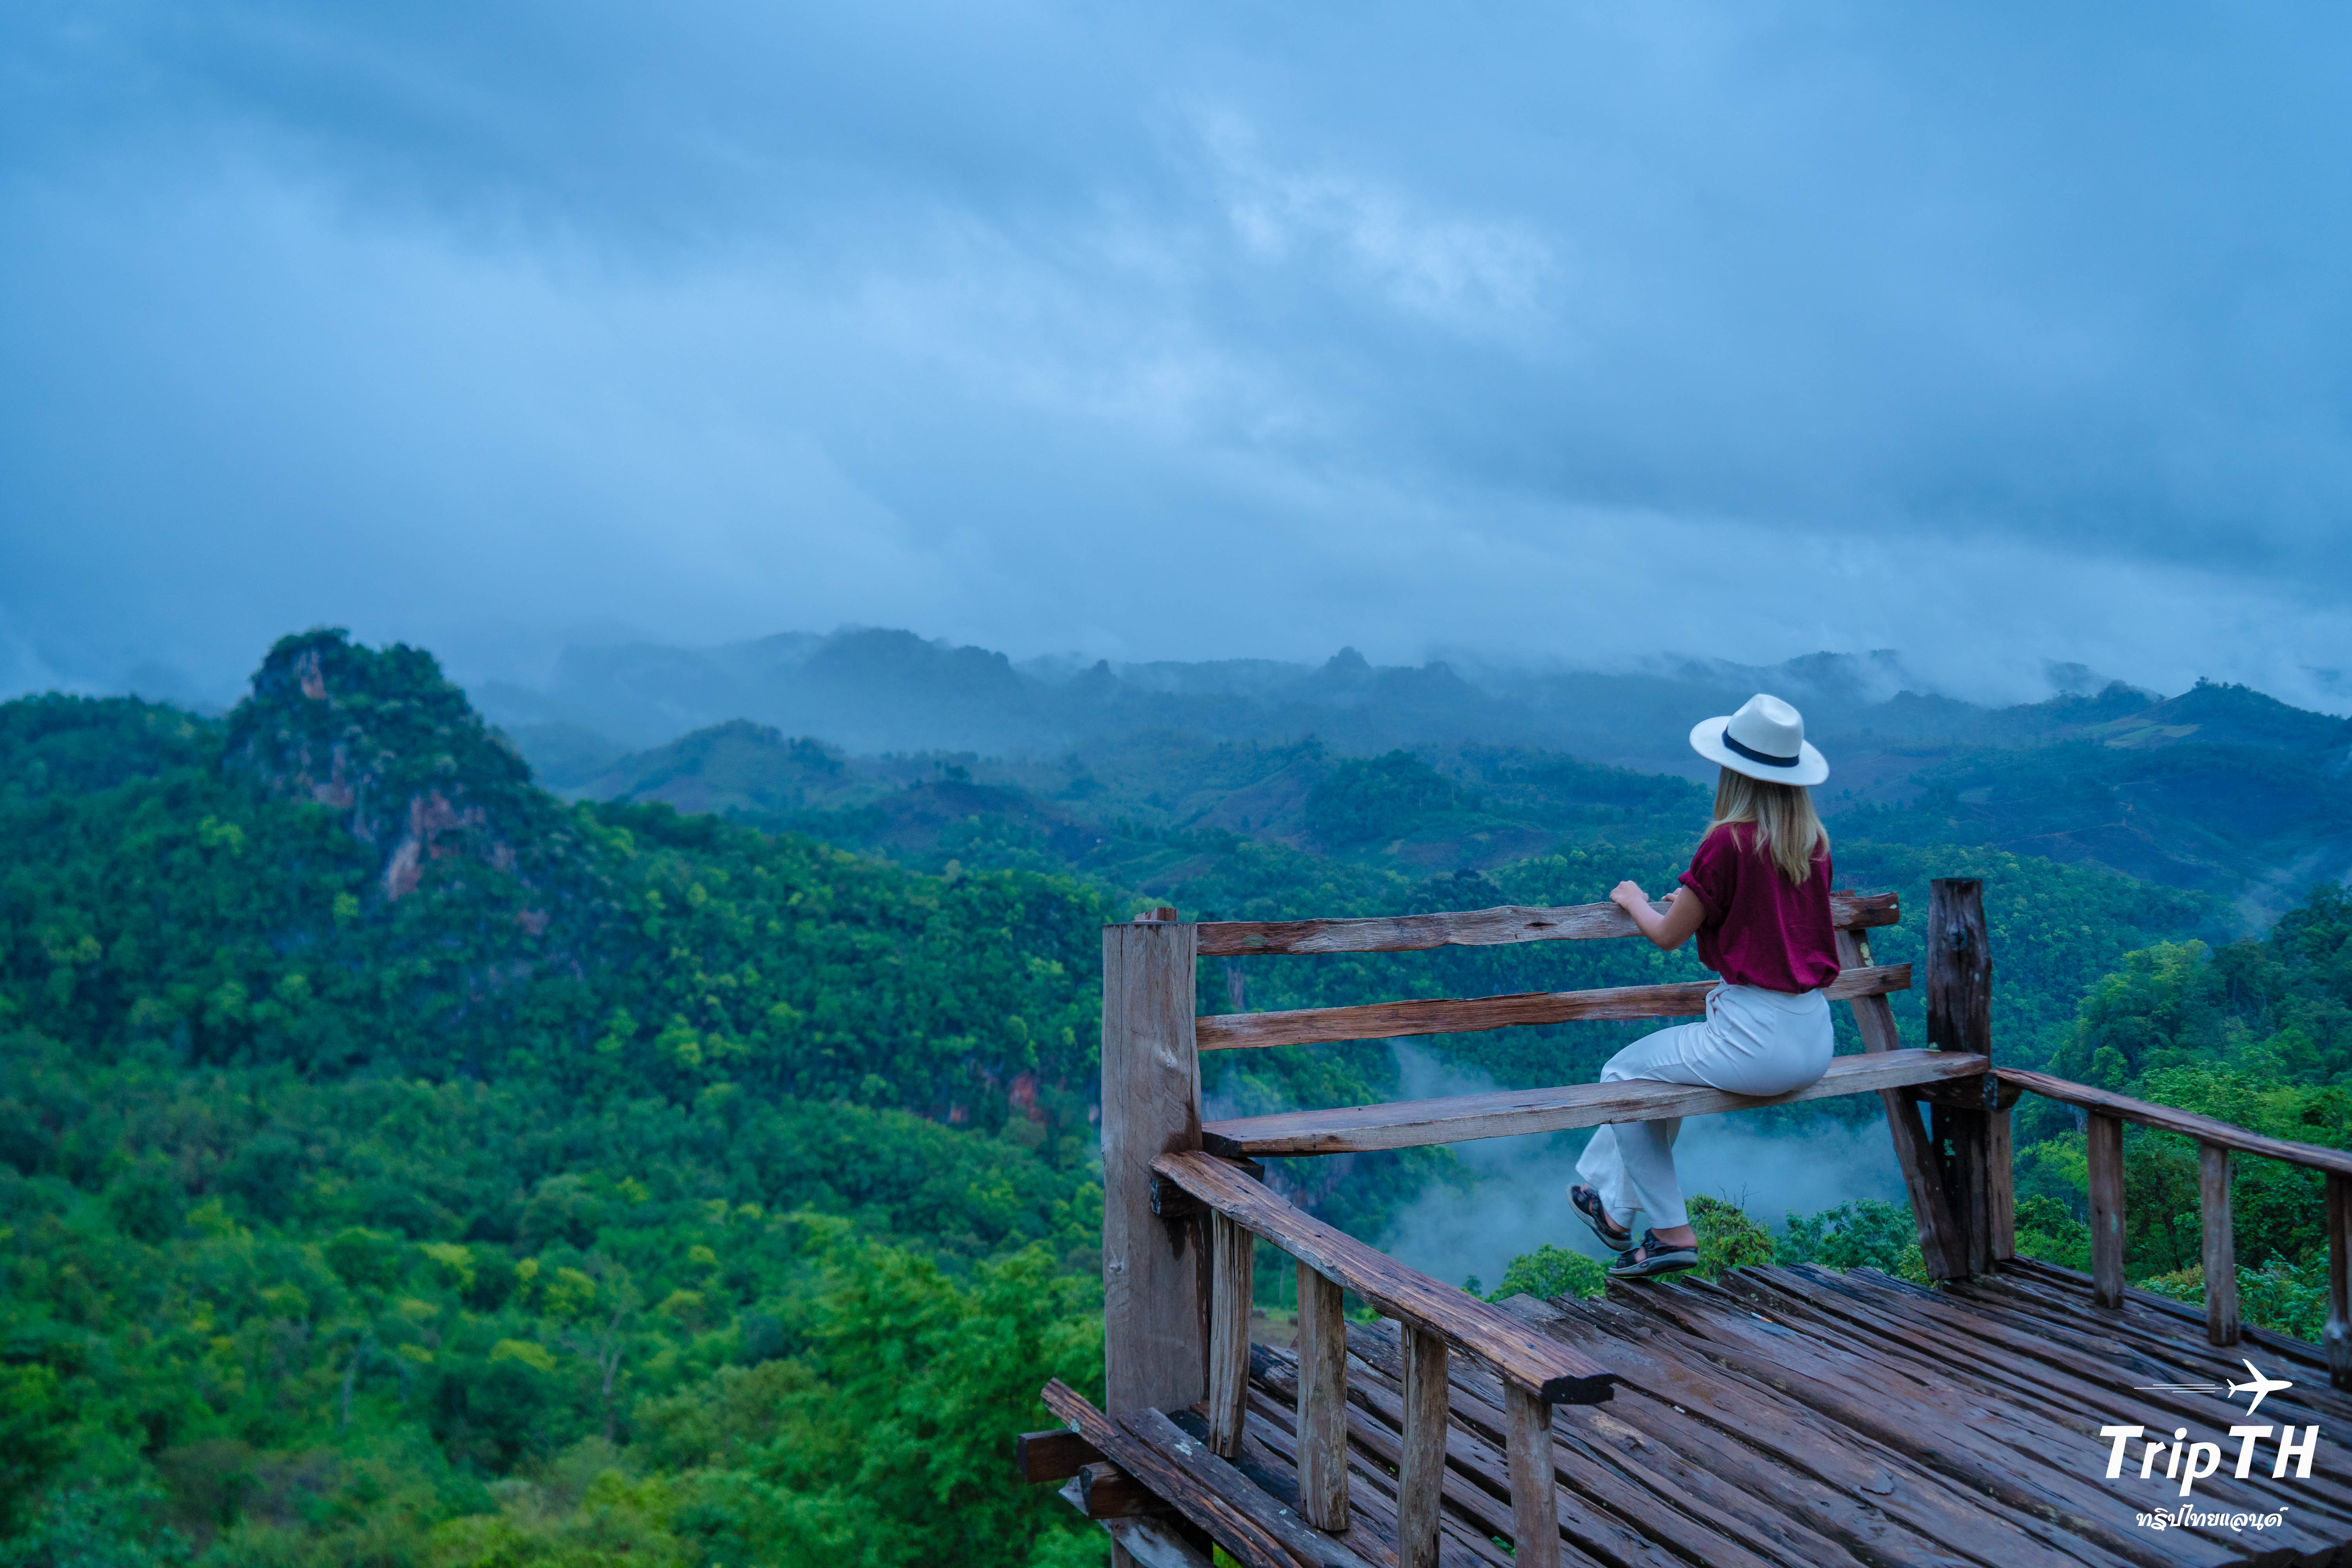 เที่ยวแม่ฮ่องสอน หน้าฝน 5 วัน 4 คืน ชมหมอก ภูเขา พาหัวใจไปพักผ่อนกับคนรู้ใจ | TripTH | ทริปไทยแลนด์